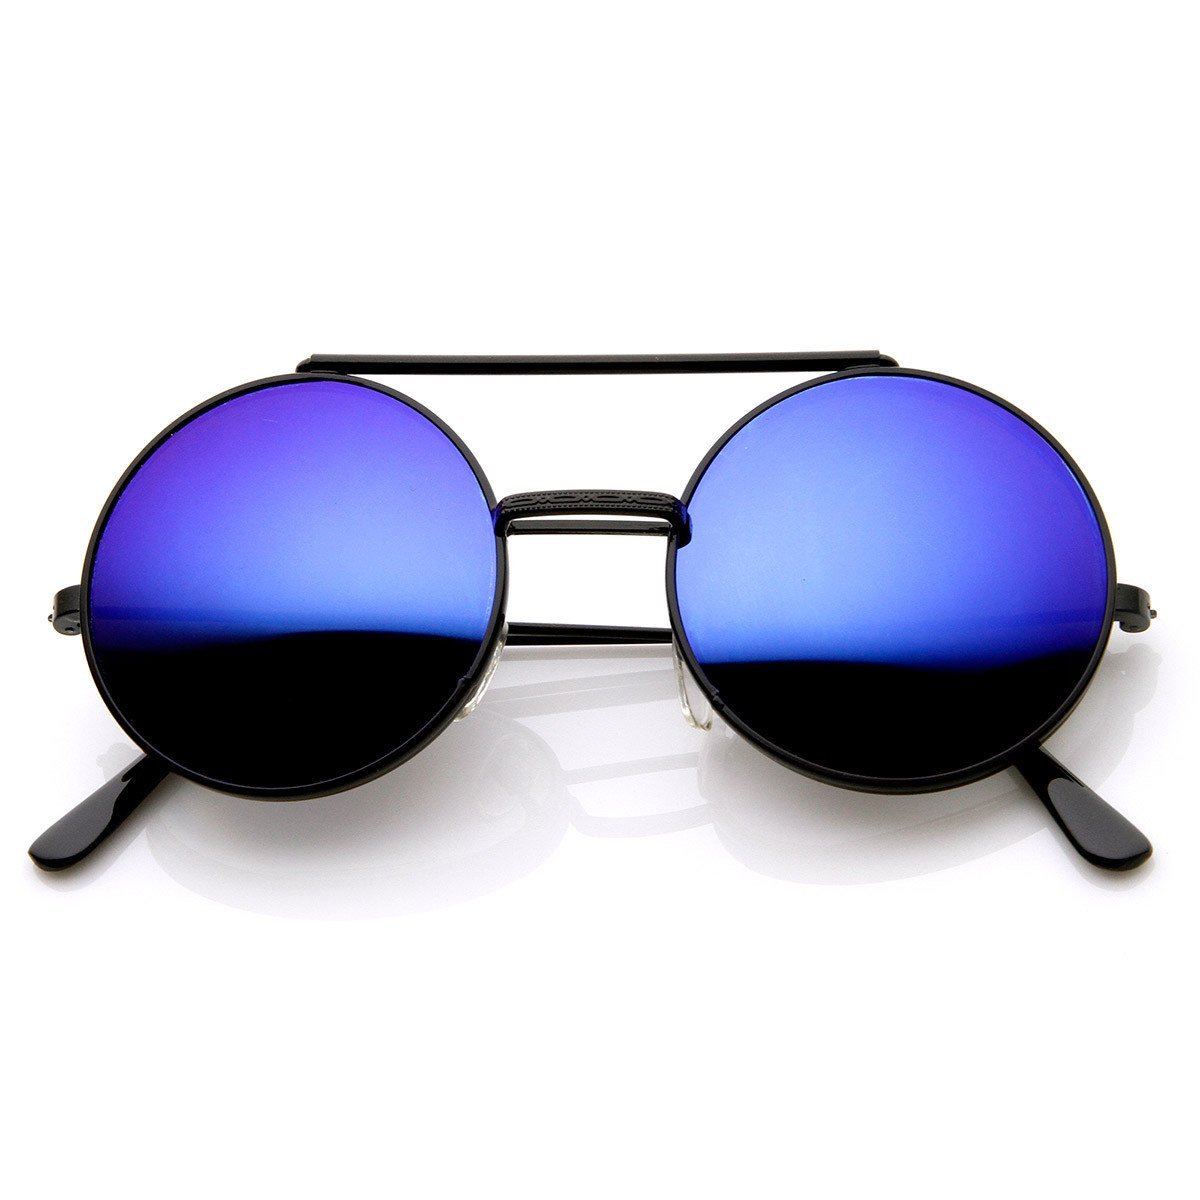 The Movie Star metal frame UV Glasses